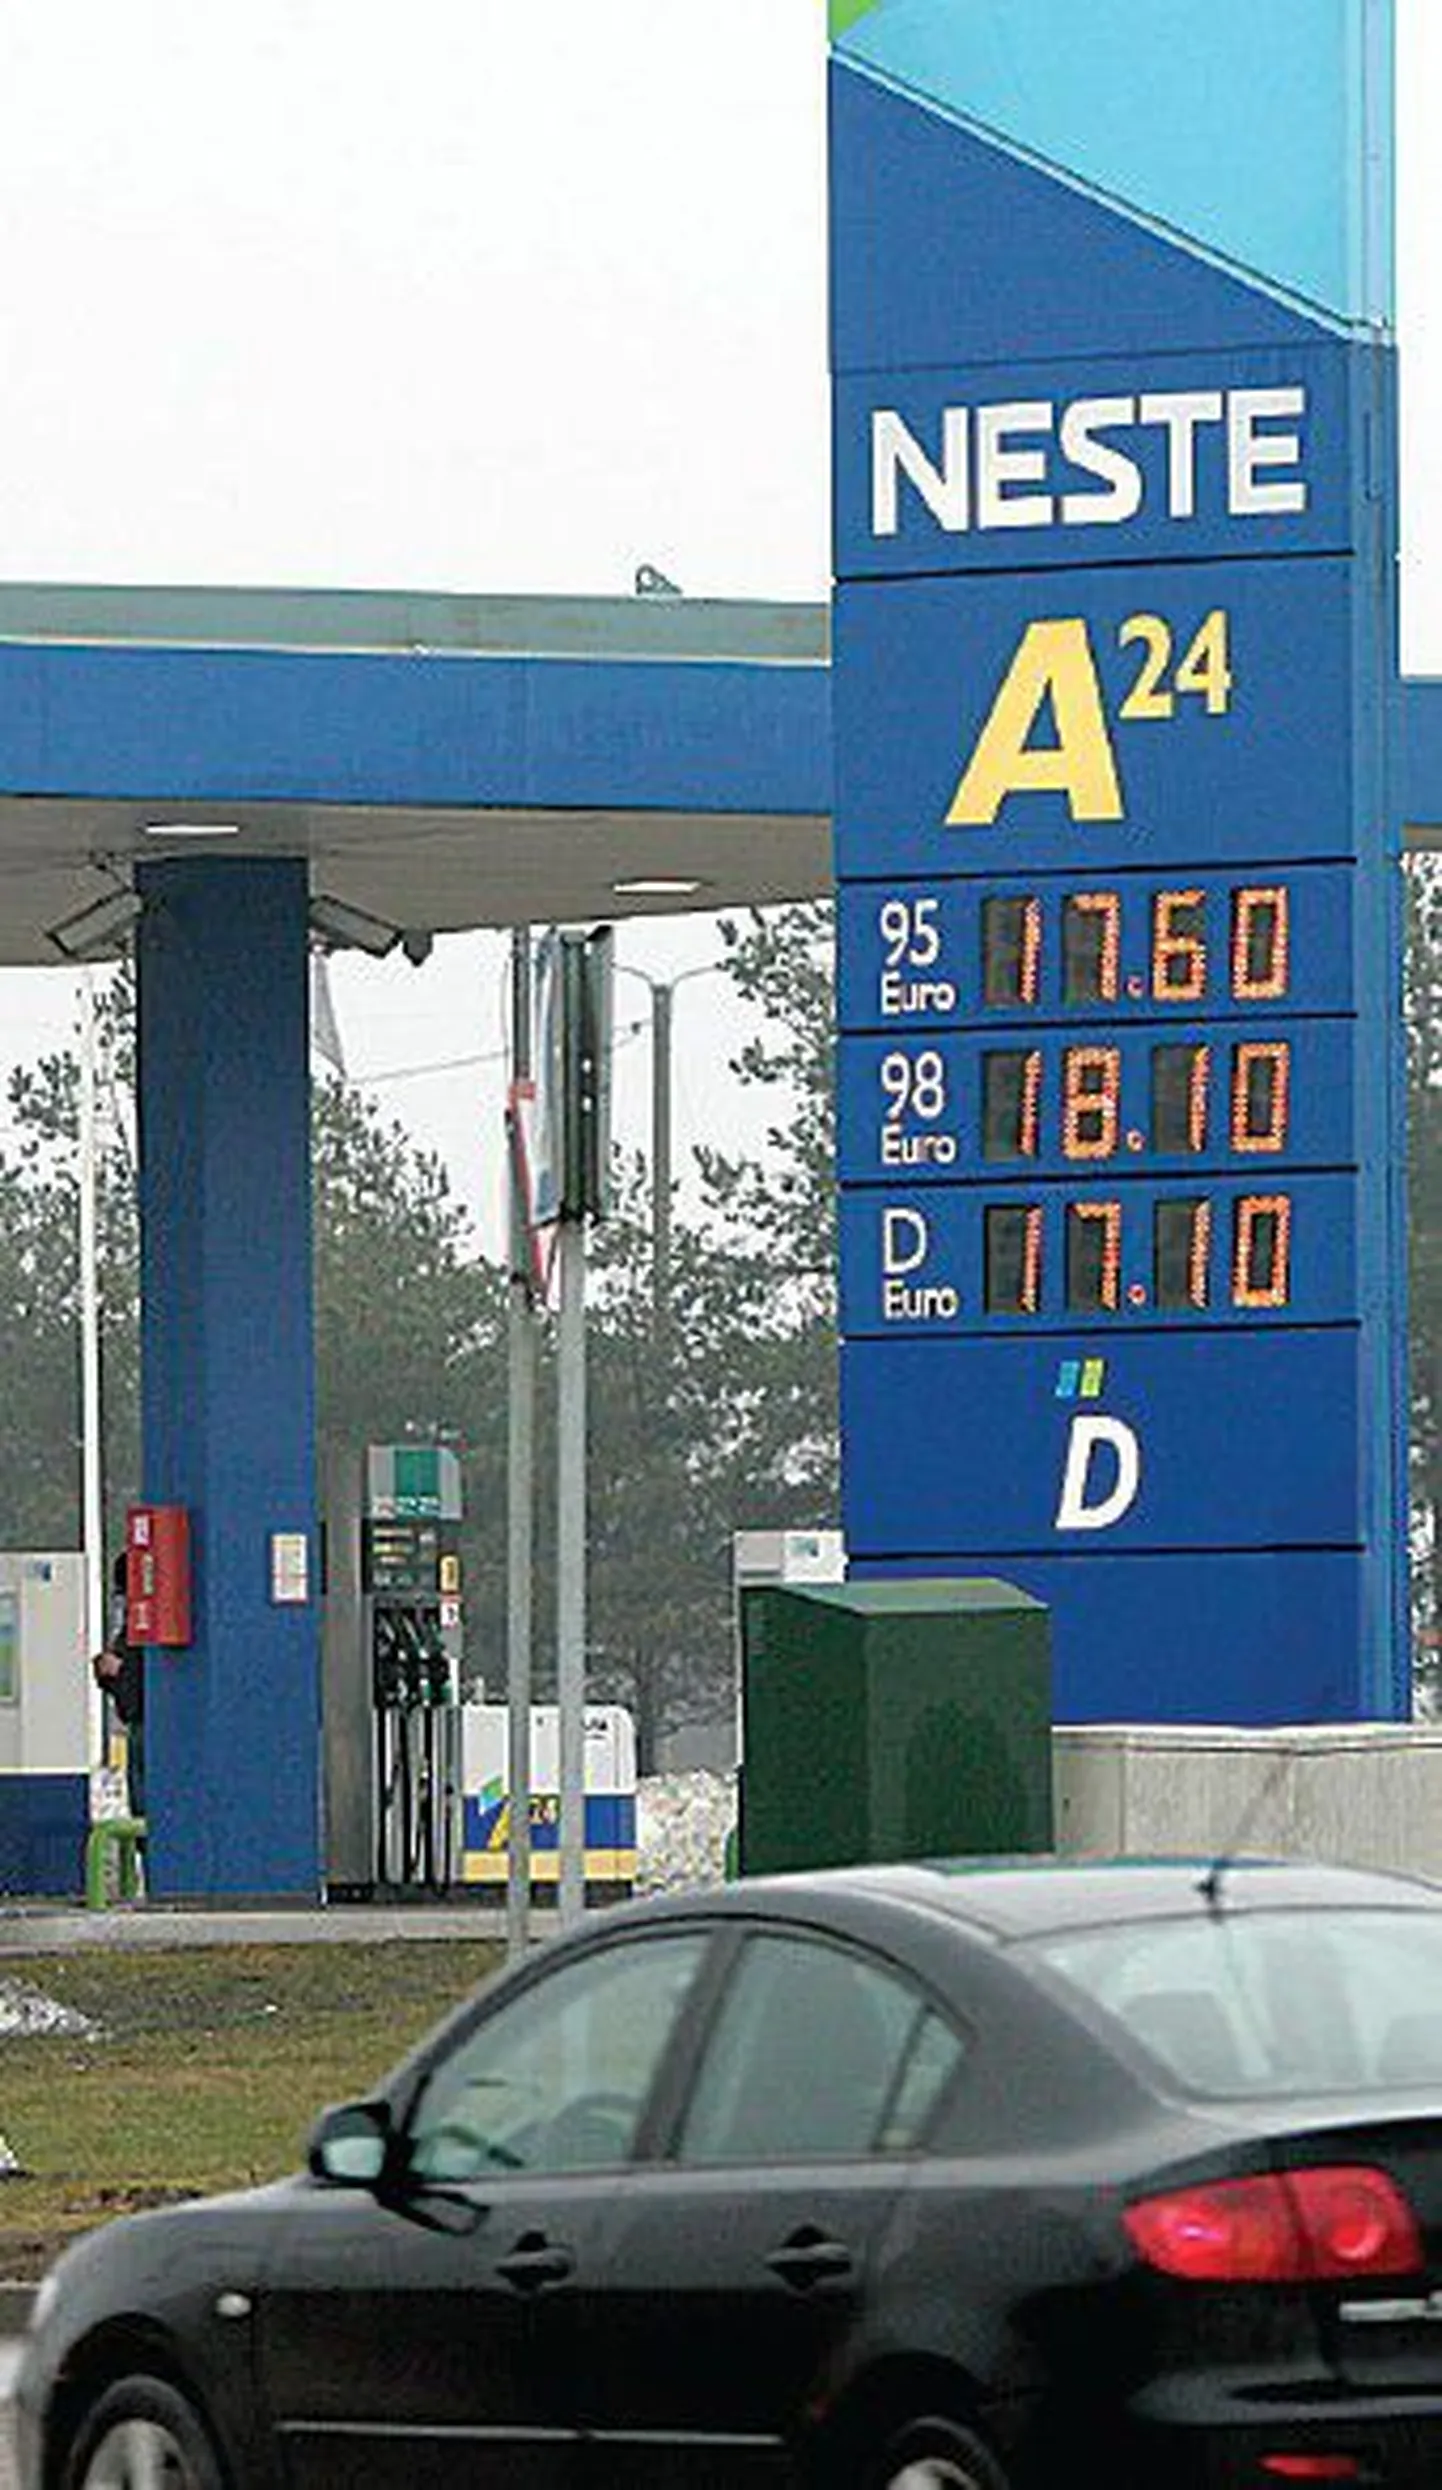 Подорожание топлива, как правило, приводит к повышению цен на многие товары и услуги. Но фото: цены на бензин на заправке Neste 6 апреля.